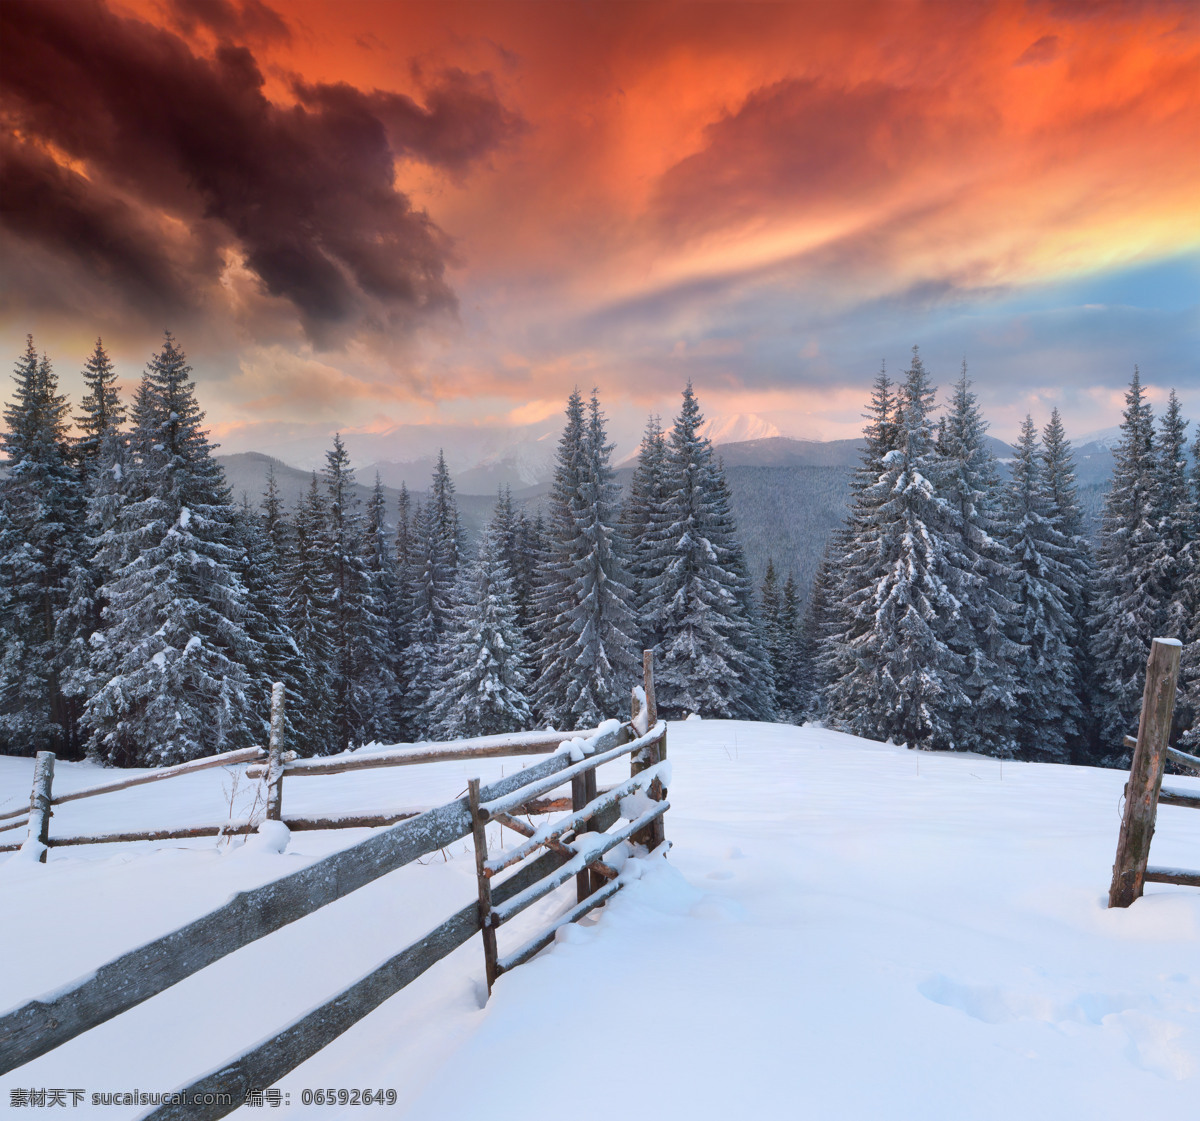 傍晚 山林 雪景 夕阳 树林 松树 栅栏 雪地 雪景图片 风景图片